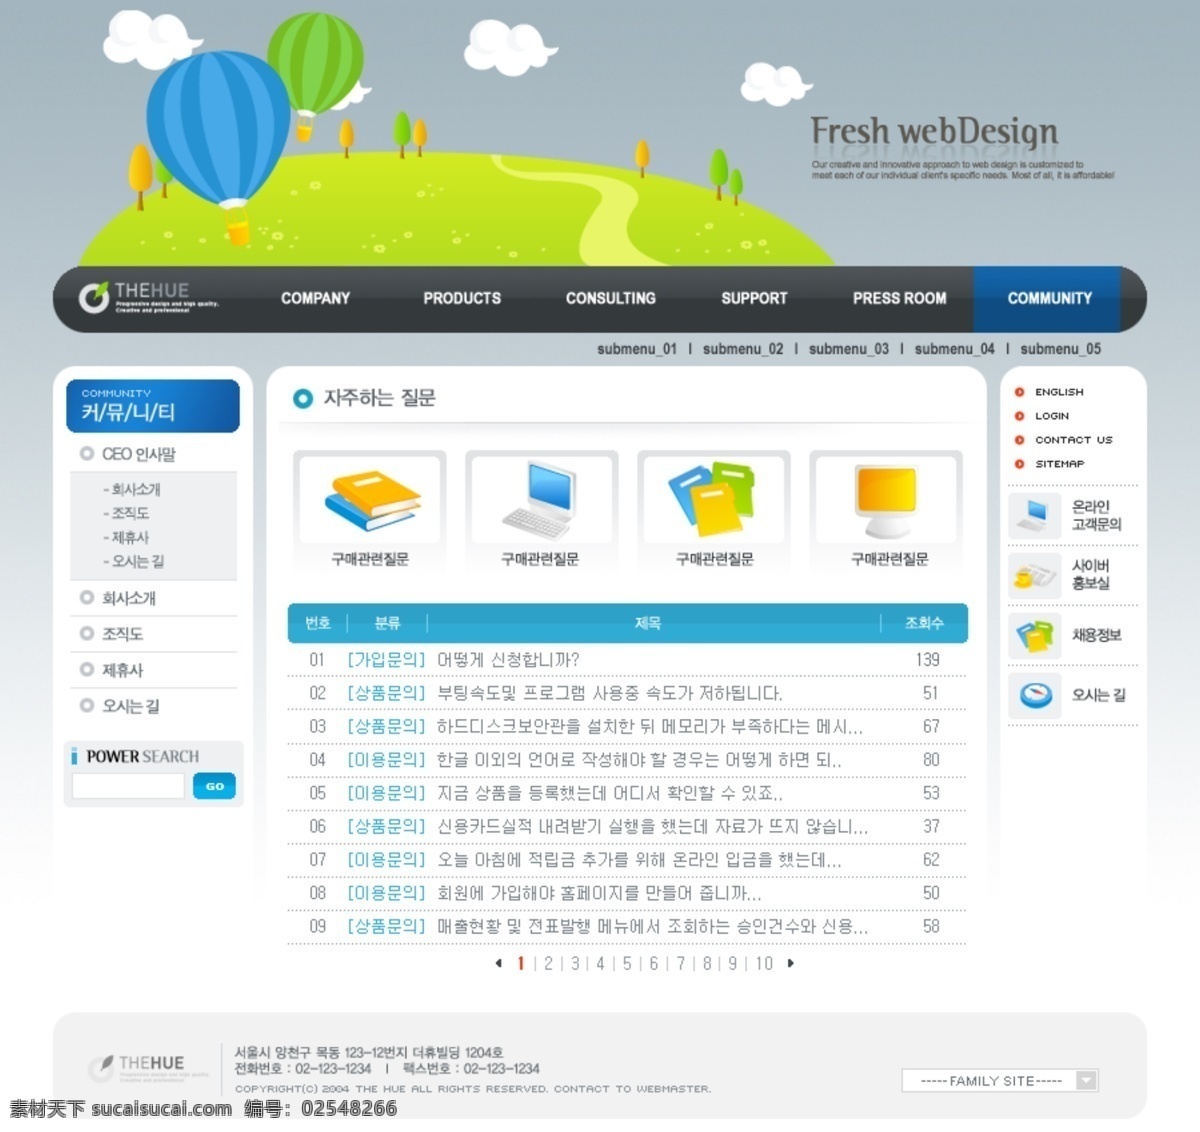 psd源文件 韩国模板 网页模板 源文件库 精美 源文件 模板下载 精美网页模板 网页素材